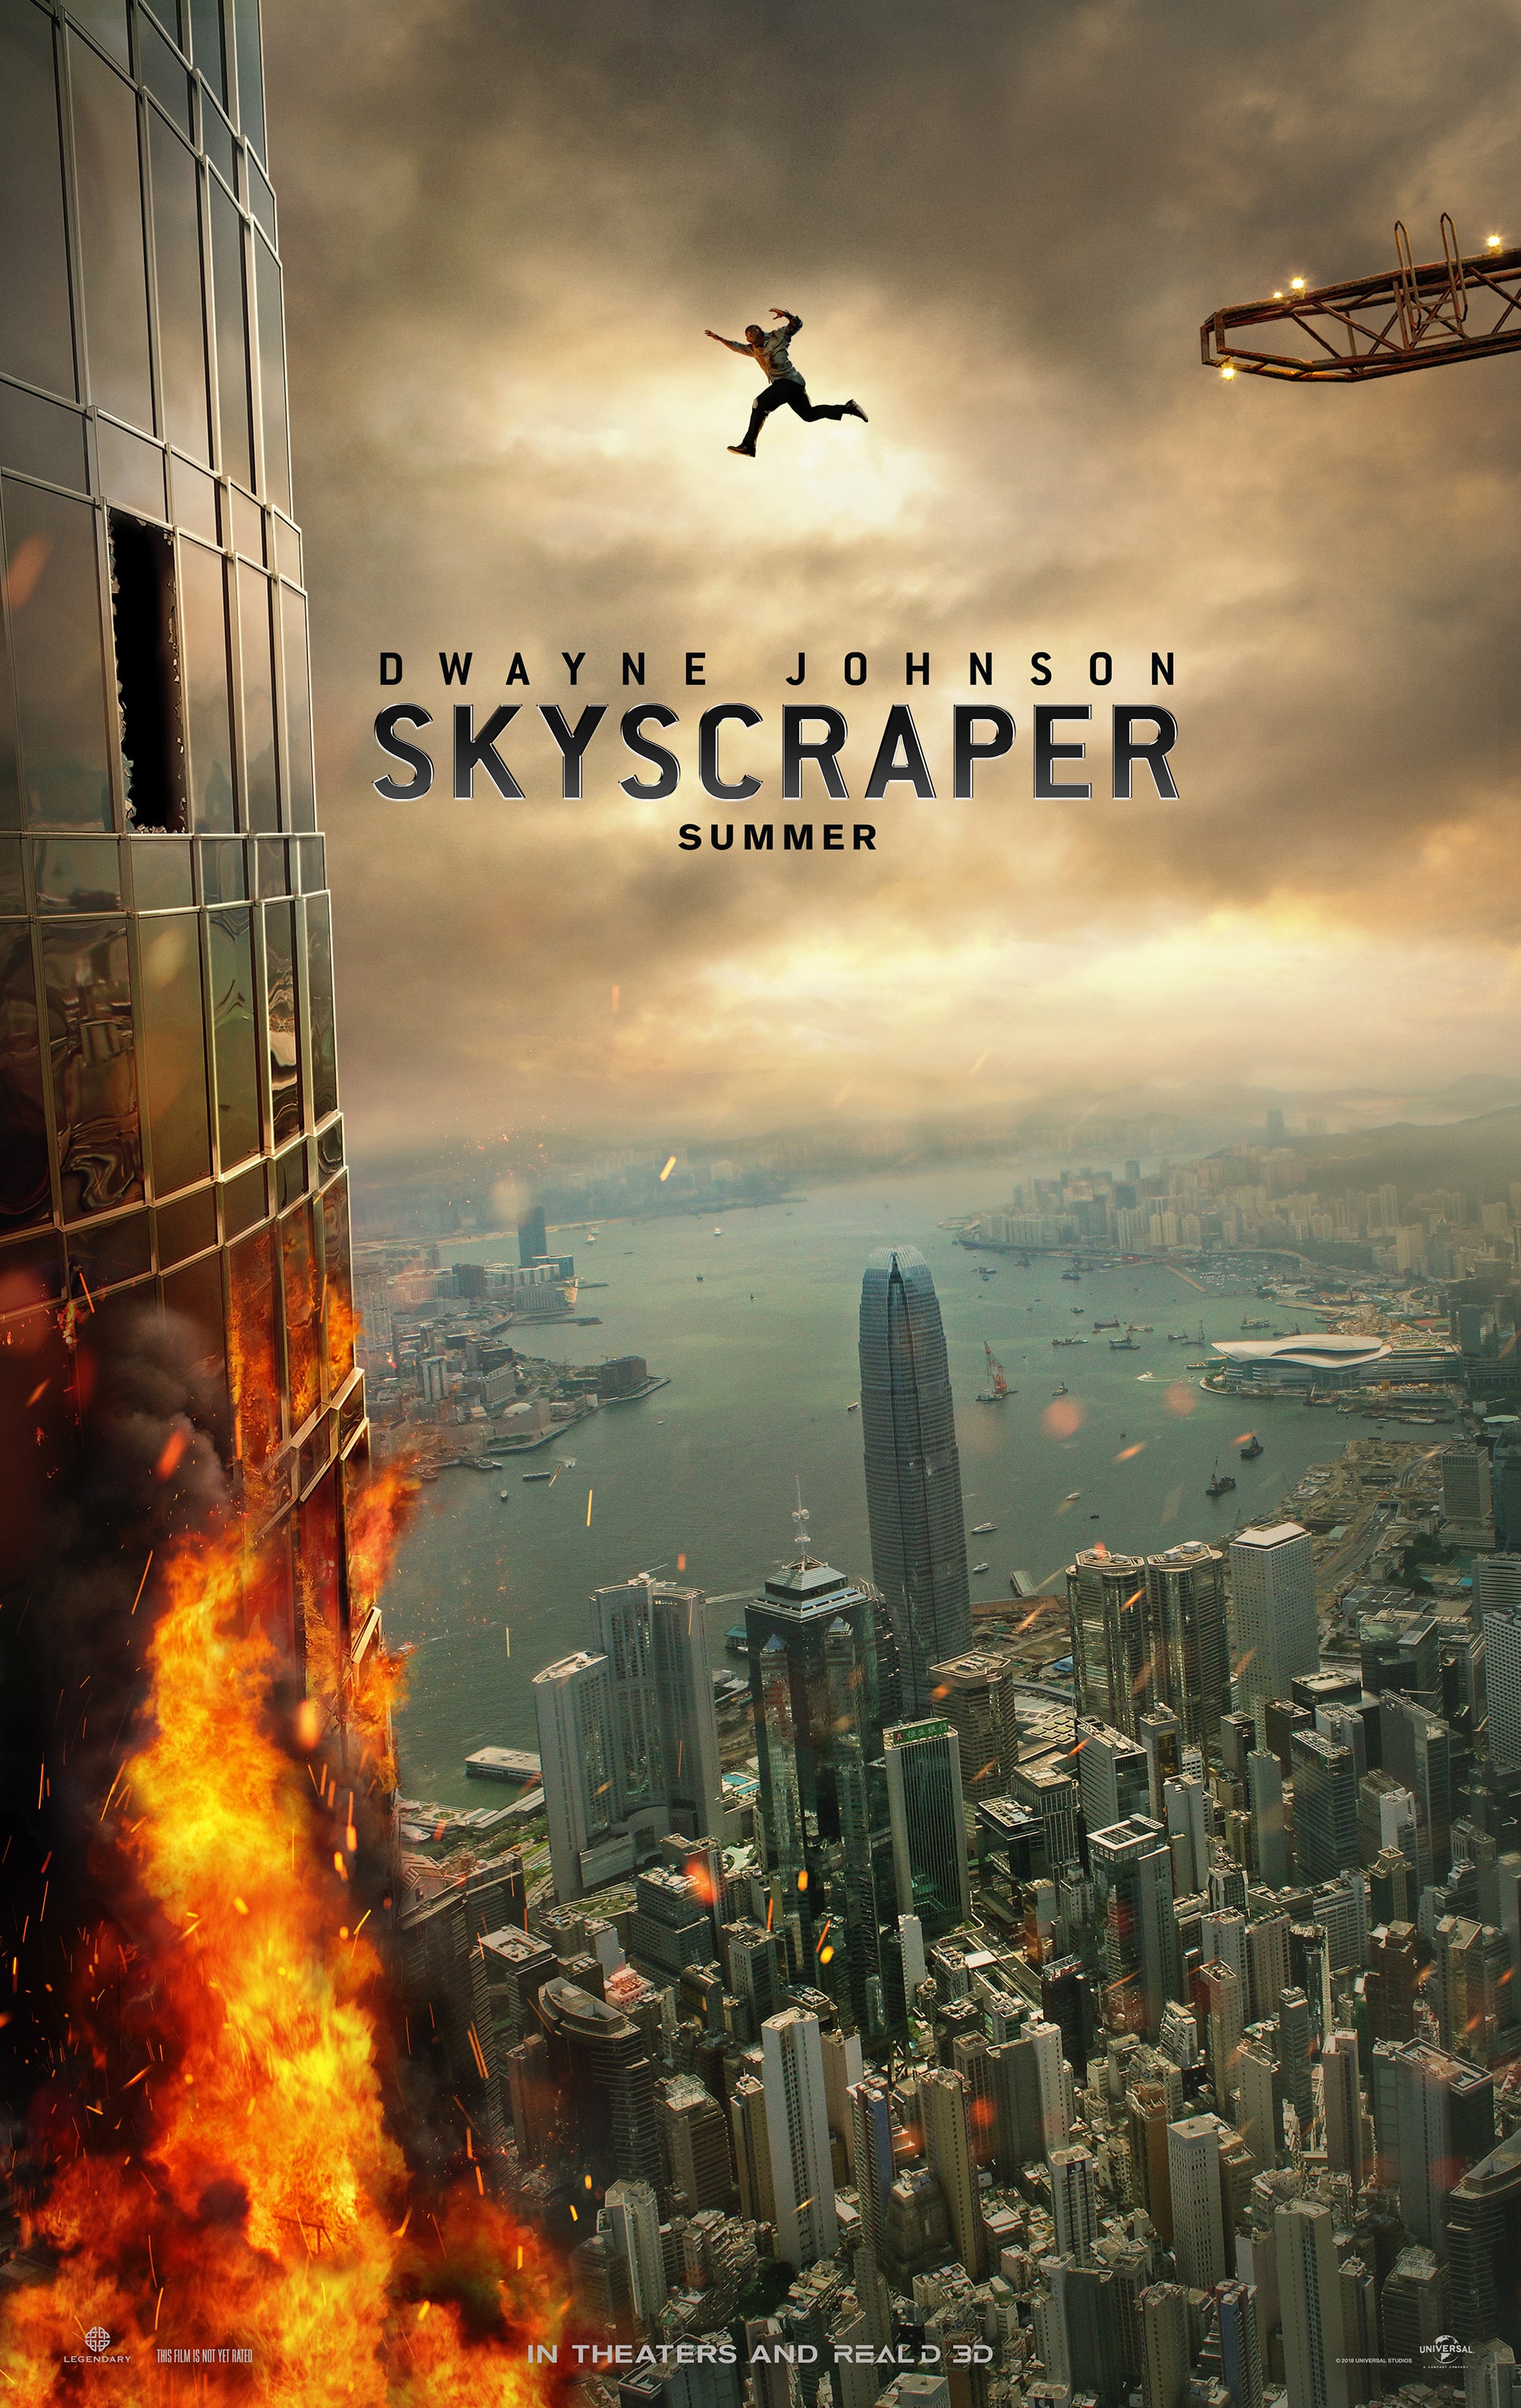 Skyscraper | Trailer & Movie Site | July 13 2018